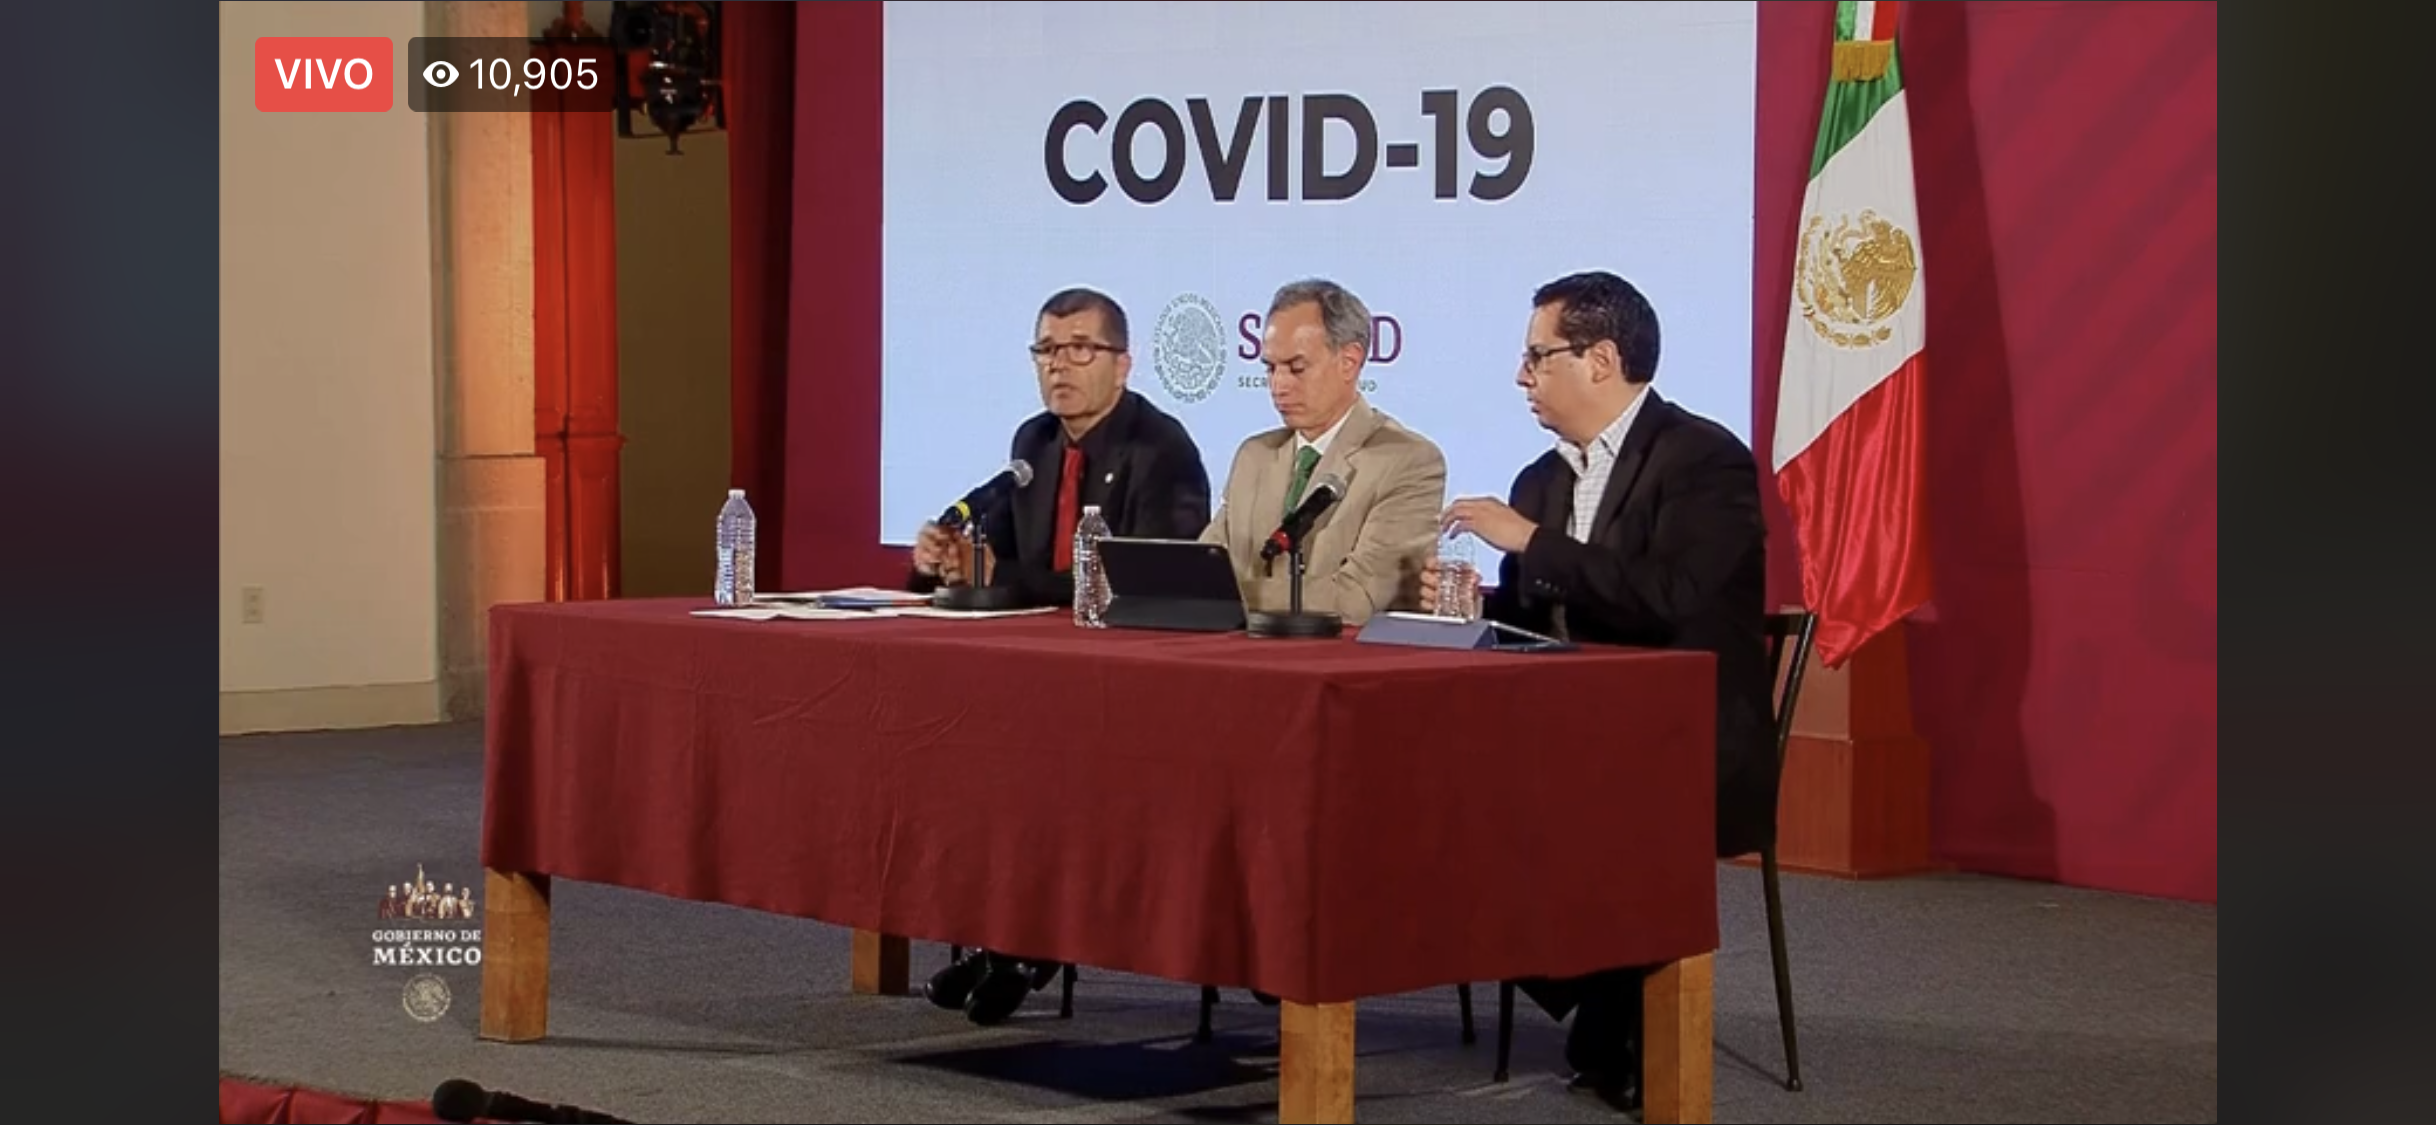 Photo of Cifra de infectados por coronavirus en México sube a 11; hay 49 casos sospechosos